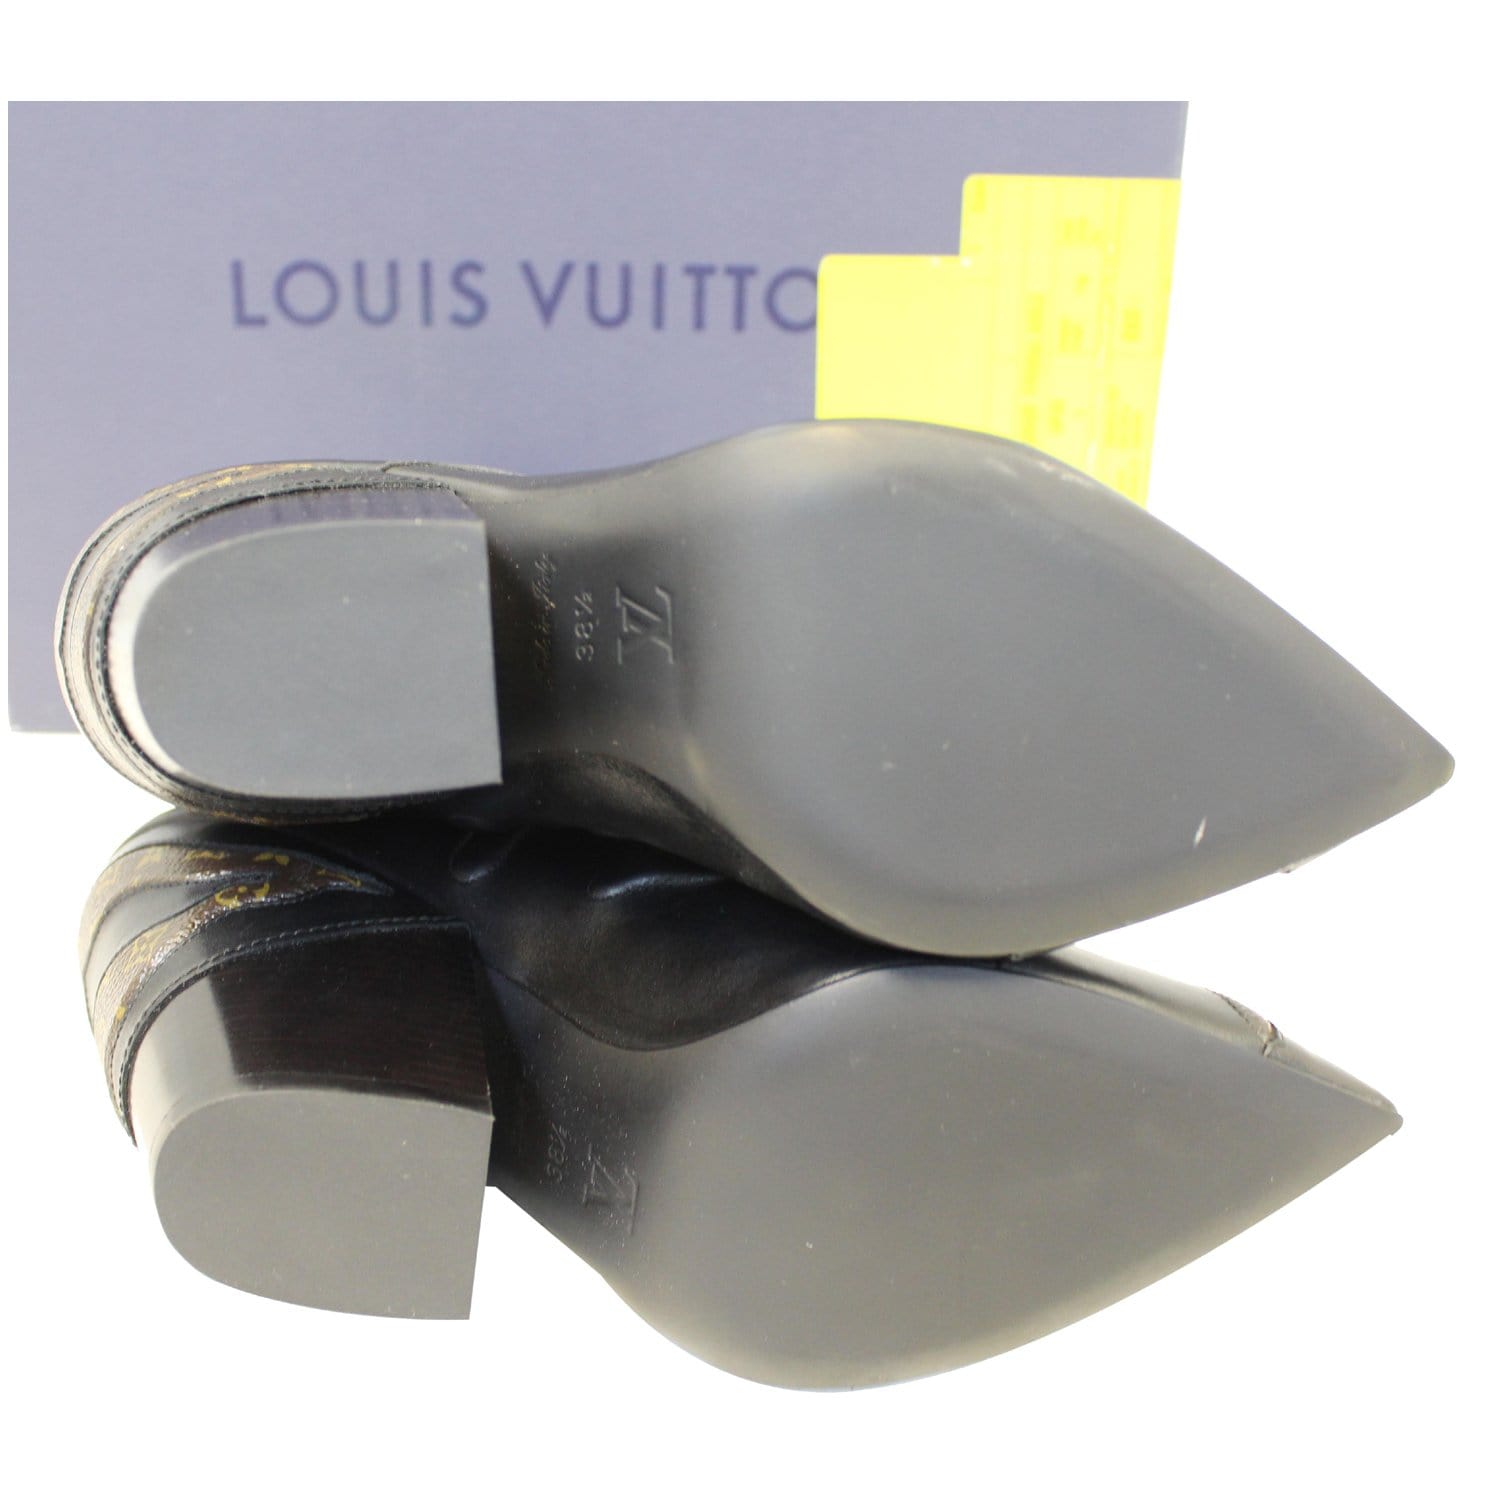 Louis Vuitton, Shoes, Louis Vuitton Monogram Revival Ankle Booties